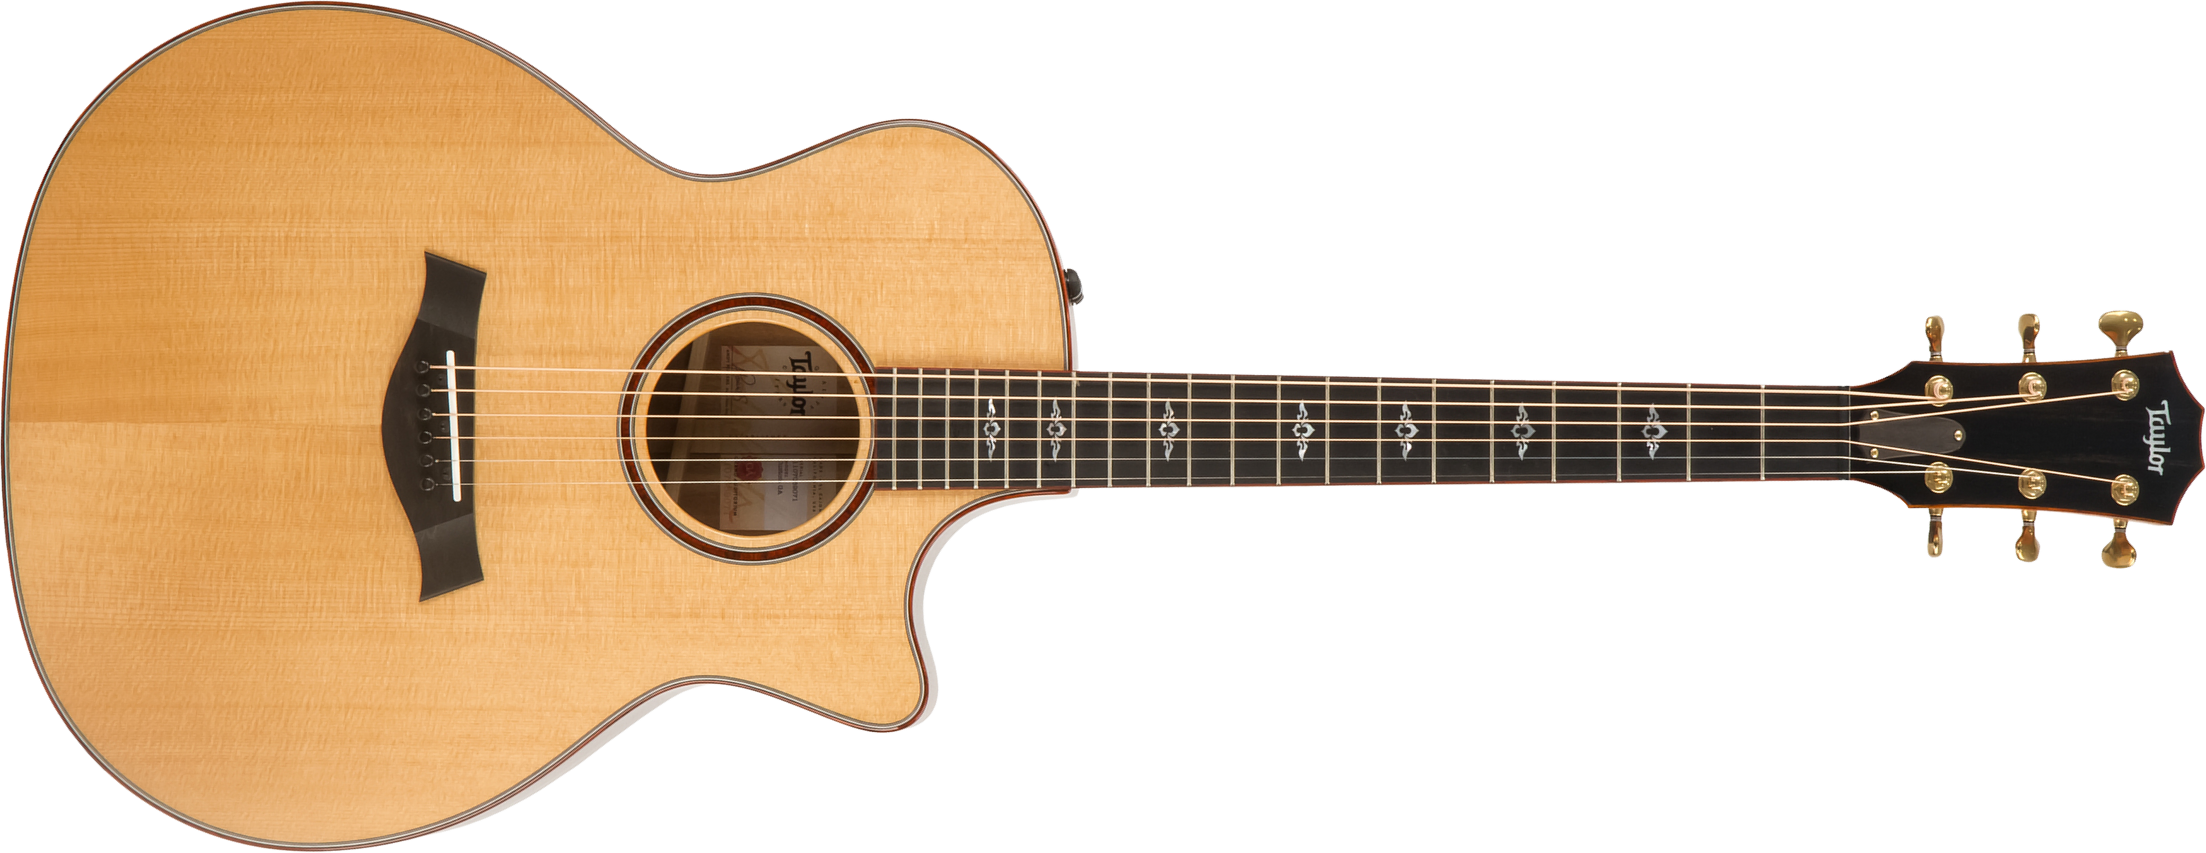 Taylor Custom Ga-ce Koa V-class 2019 Epicea Koa Eb Es2 - Natural - Elektro-akoestische gitaar - Main picture